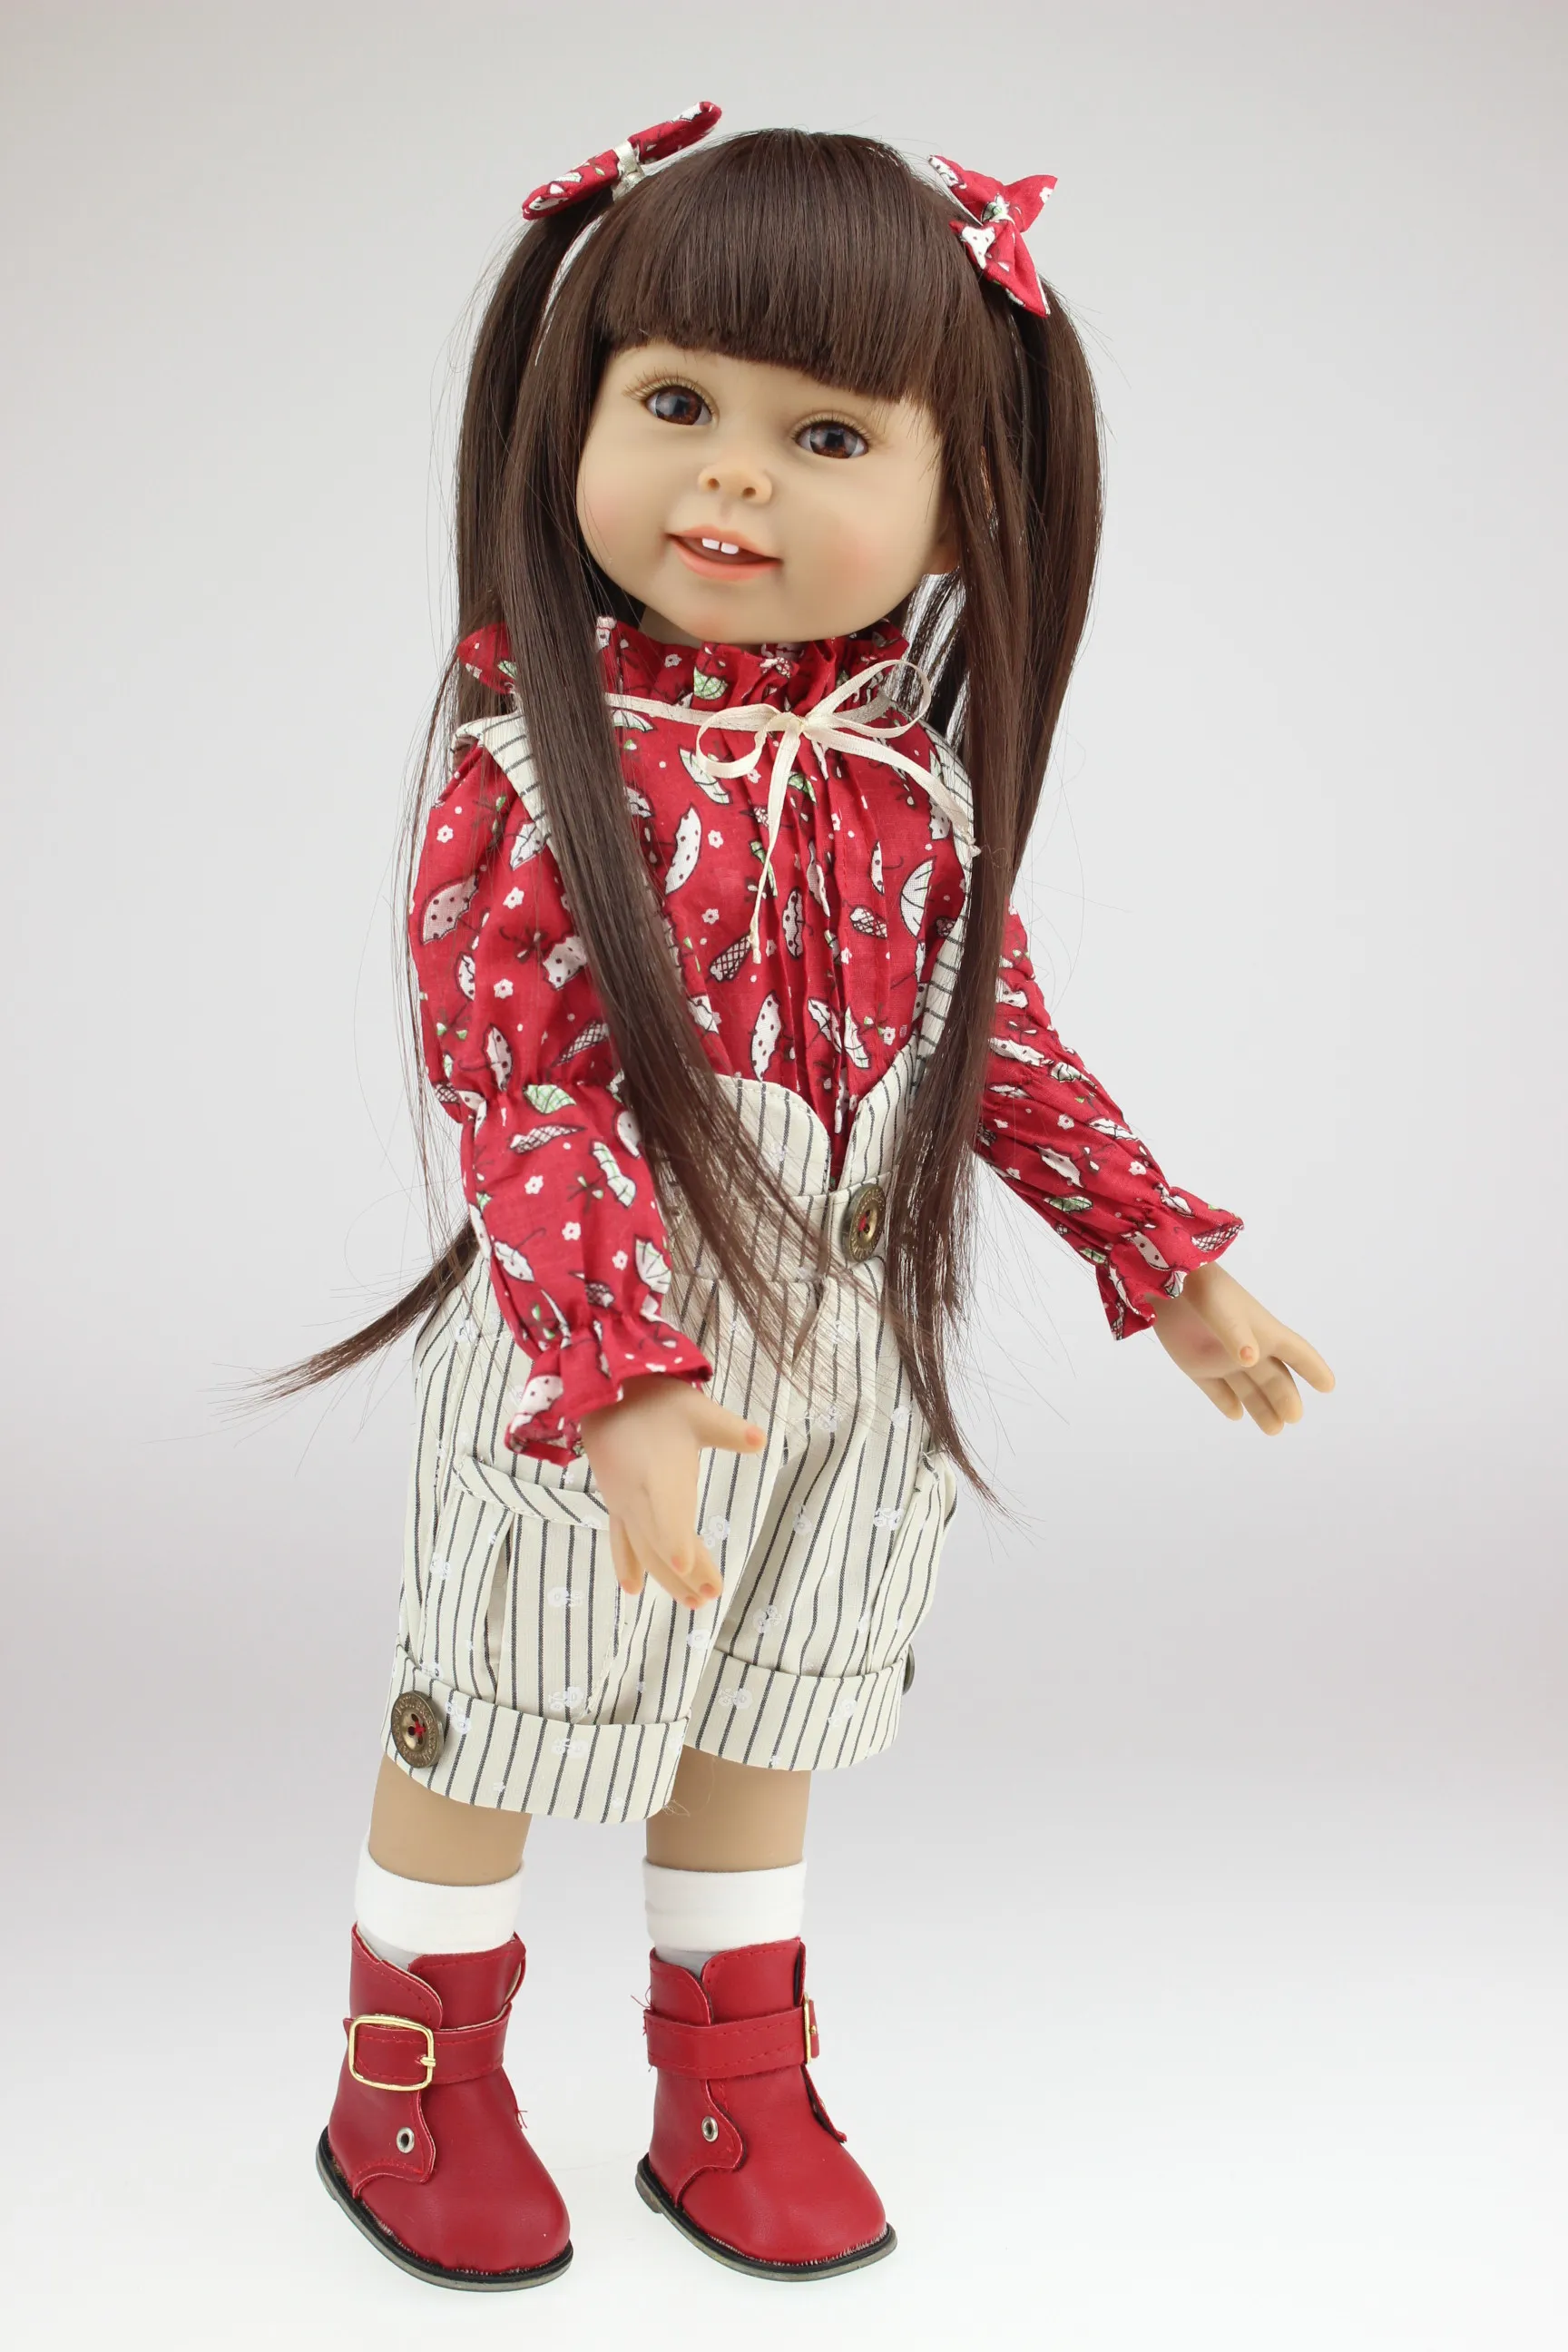 クリスマスの誕生日プレゼントとして、18インチ人形現実的なアメリカンガールフルビニールの生まれ変わった人形